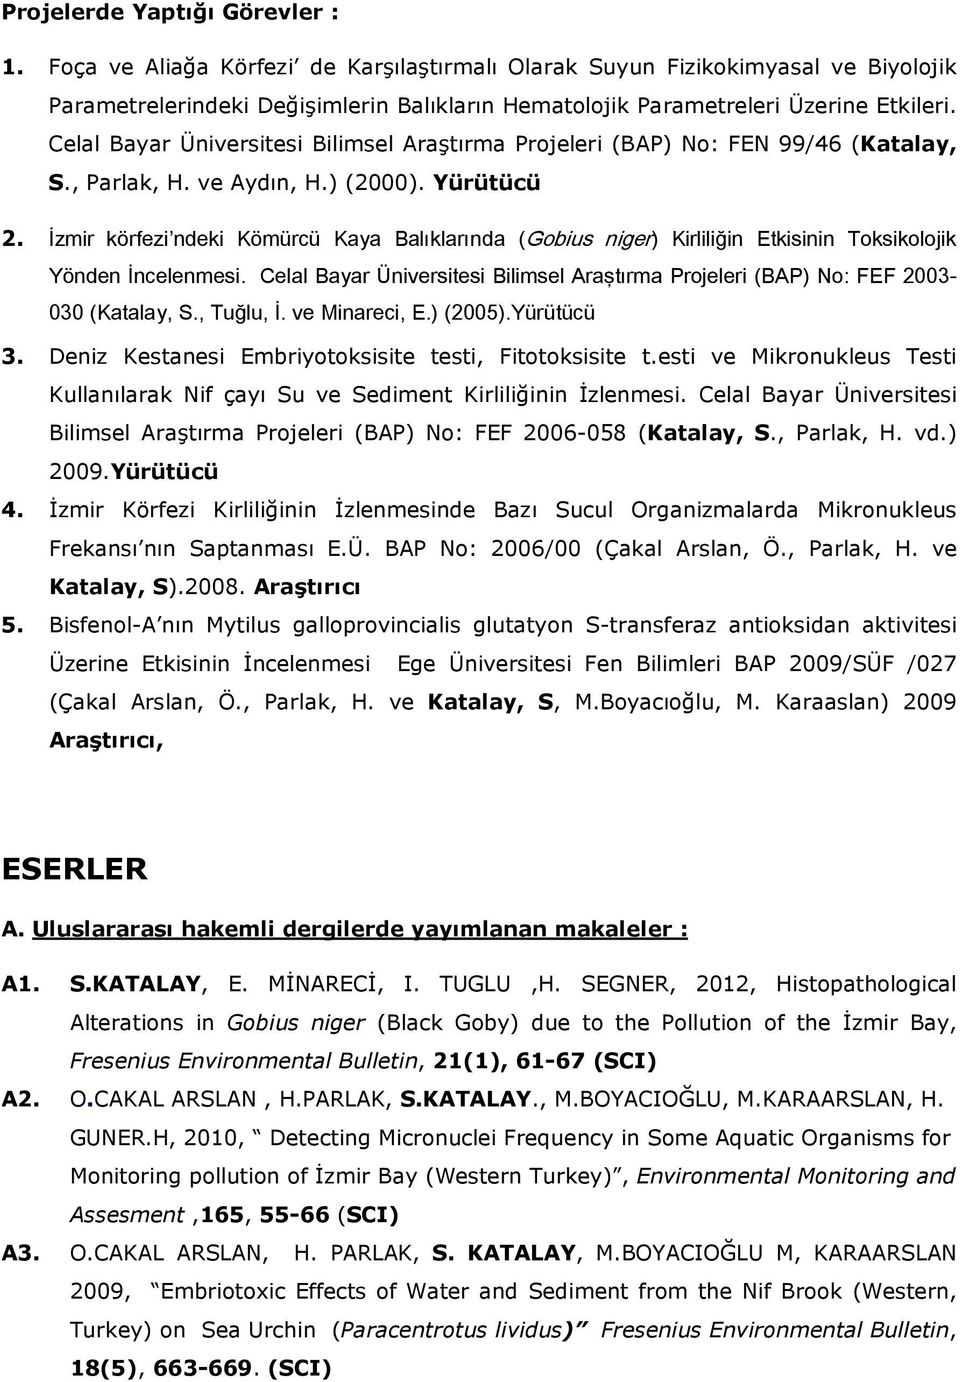 Celal Bayar Üniversitesi Bilimsel Araştırma Projeleri (BAP) No: FEN 99/46 (Katalay, S., Parlak, H. ve Aydın, H.) (2000). Yürütücü 2.